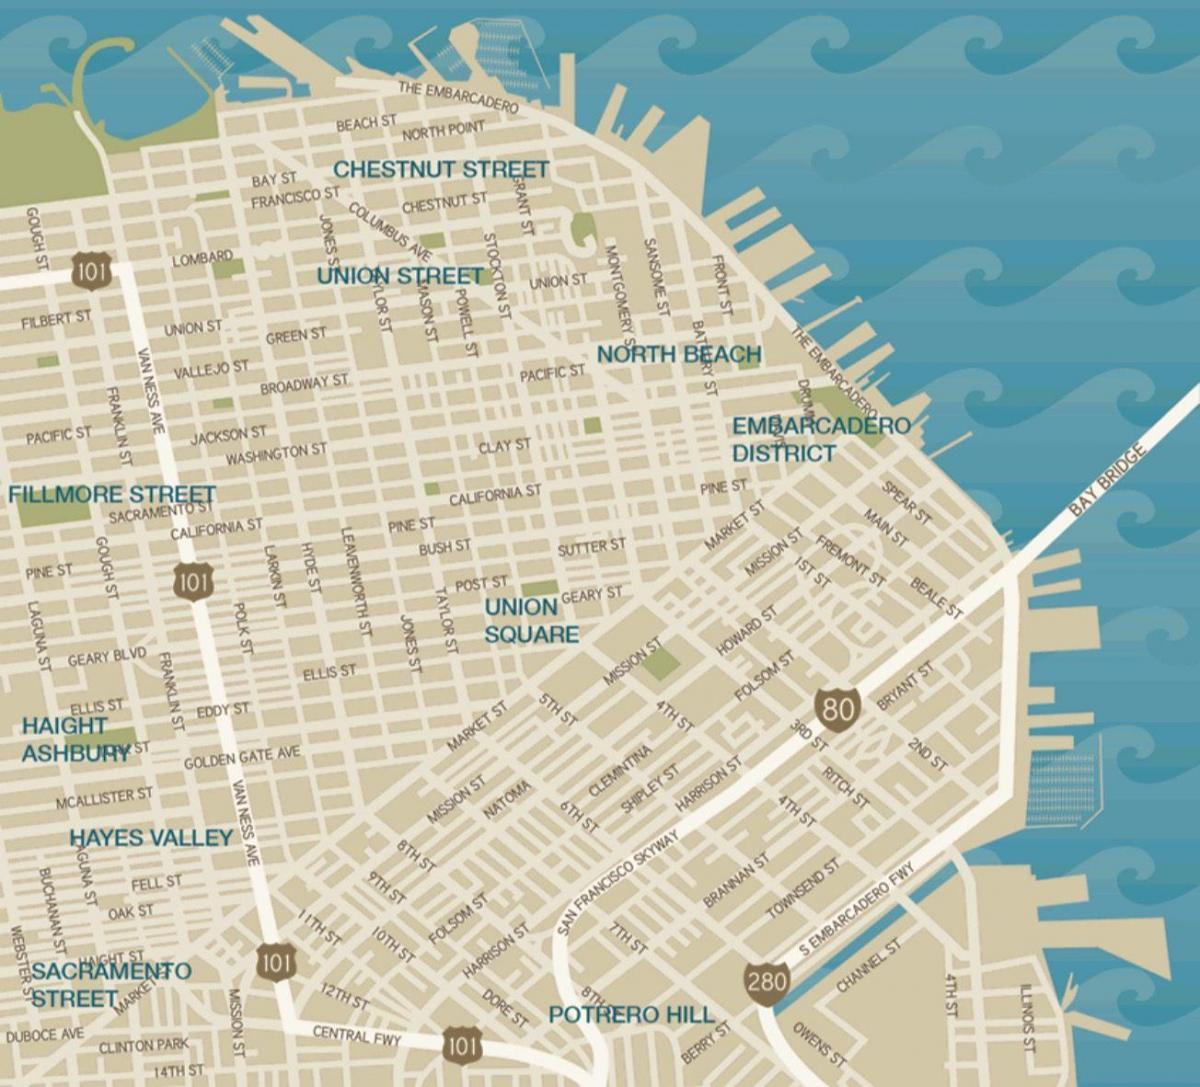 خريطة الفندق في وسط مدينة سان فرانسيسكو يونيون سكوير